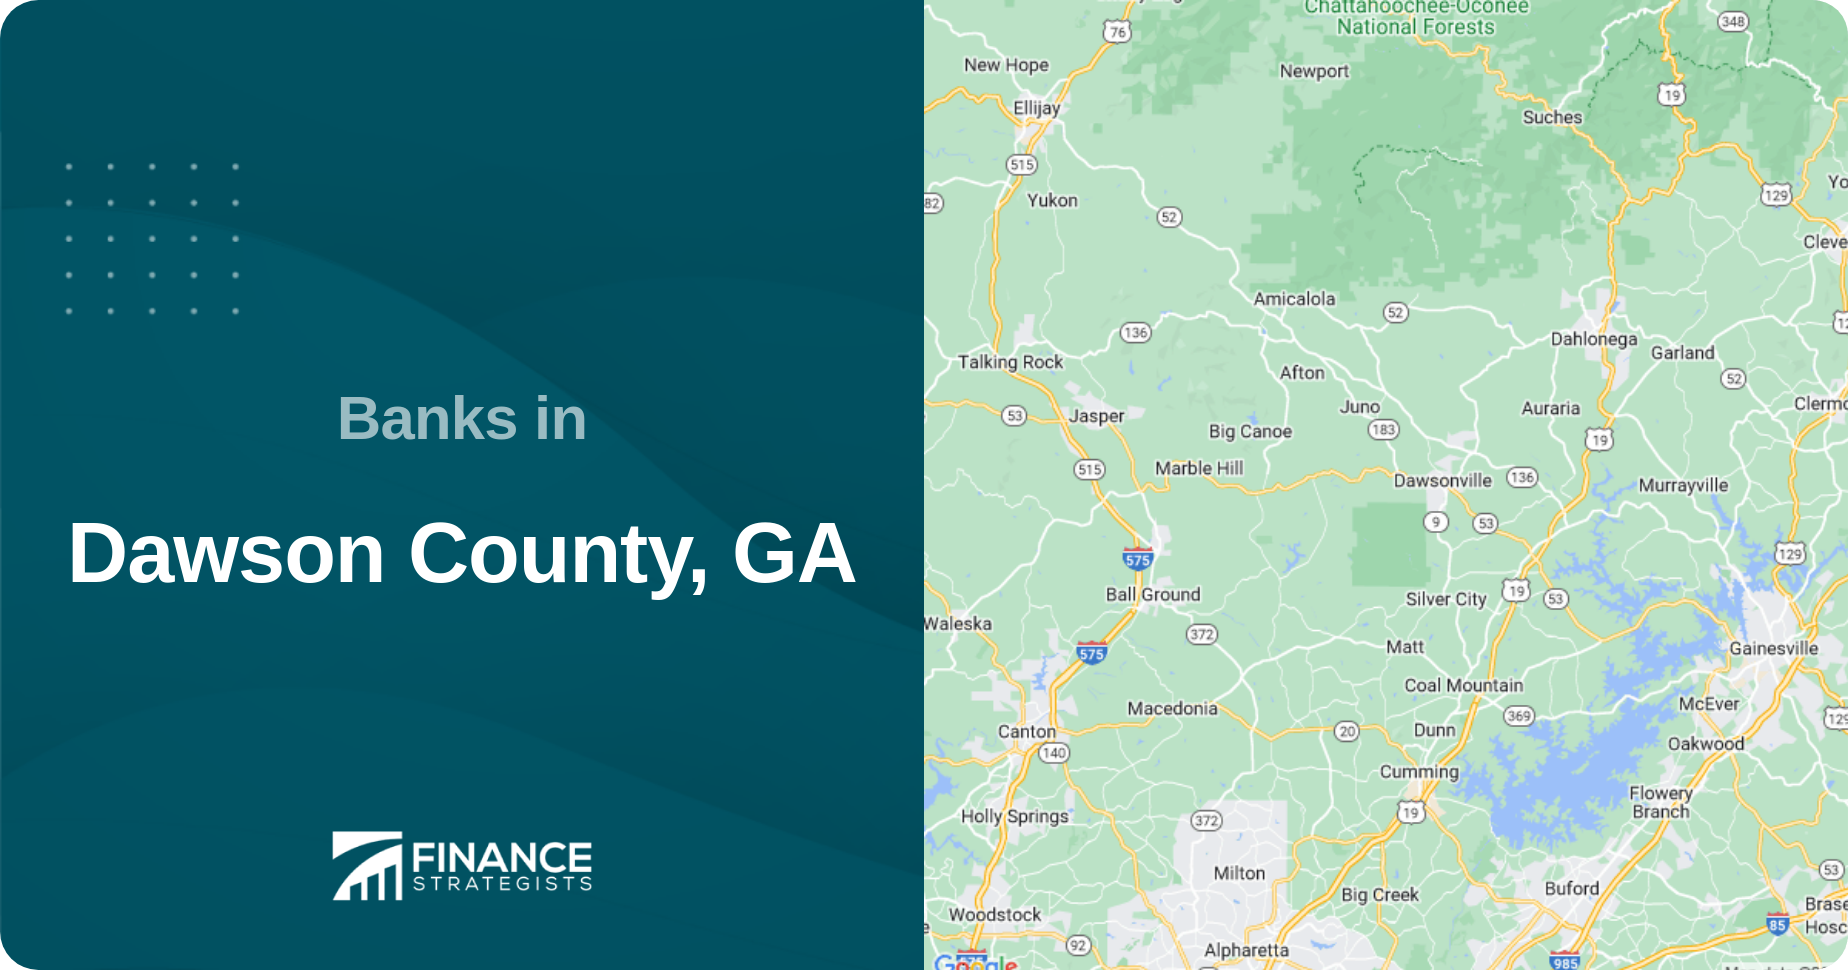 Banks in Dawson County, GA